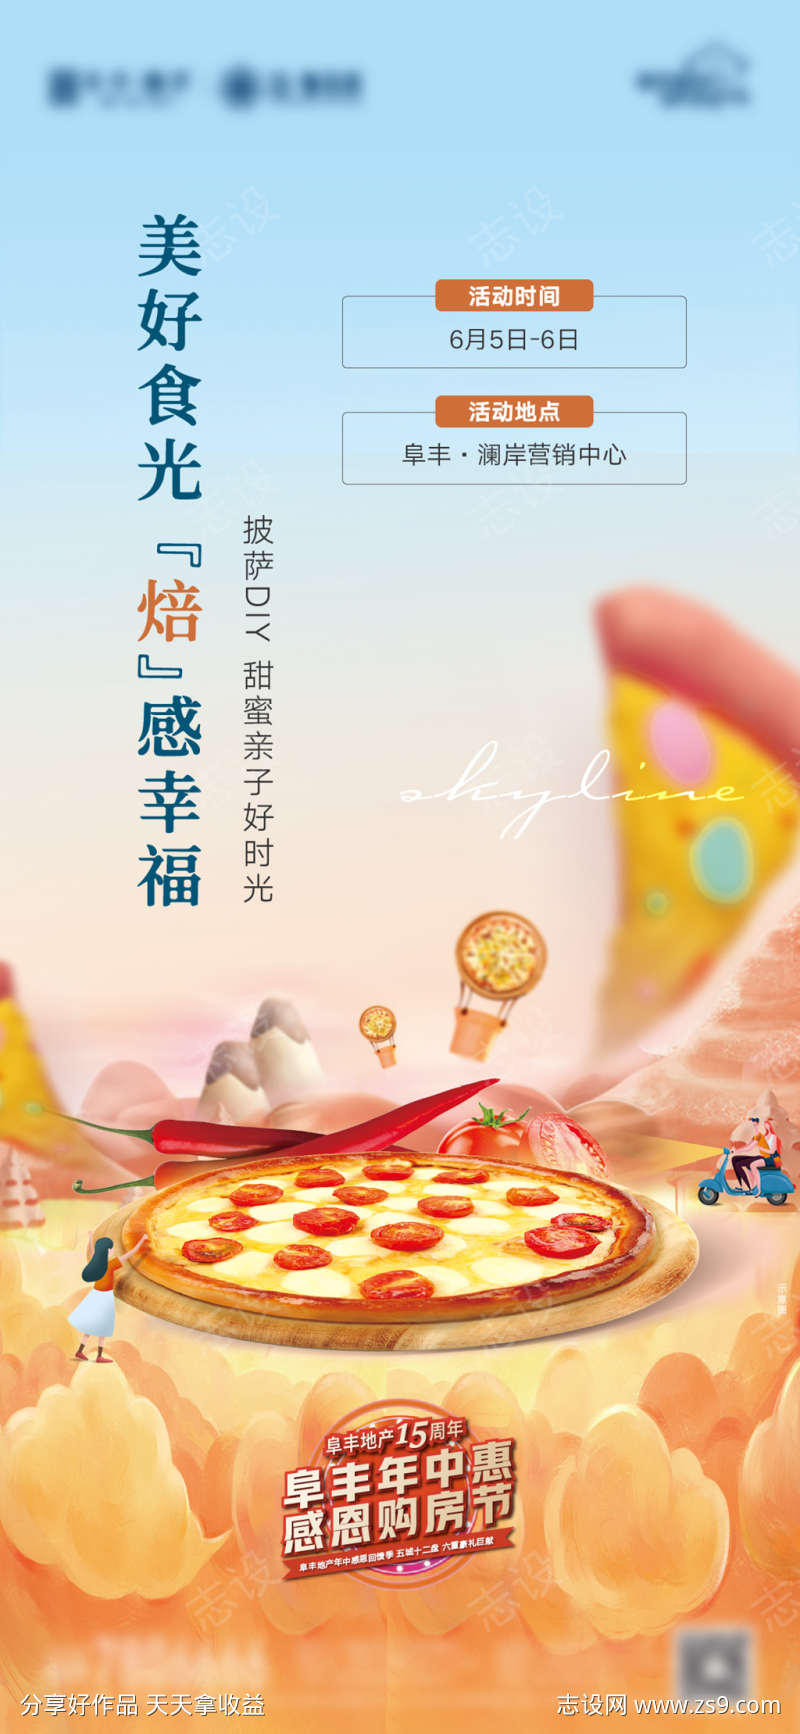 地产披萨DIY暖场活动海报